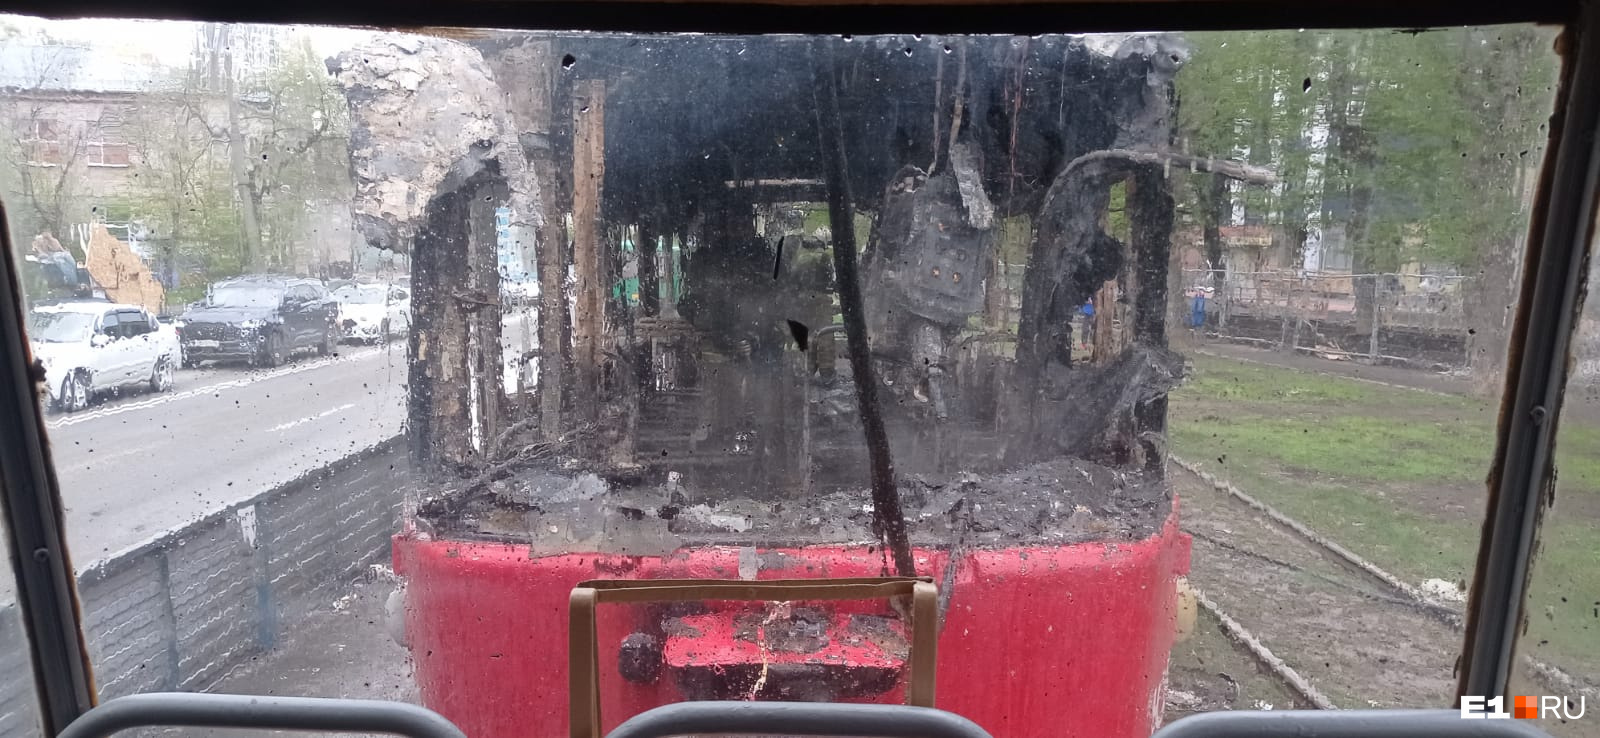 «Водитель — красавчик!» Появилось полное видео адского пожара в трамвае на Вторчермете